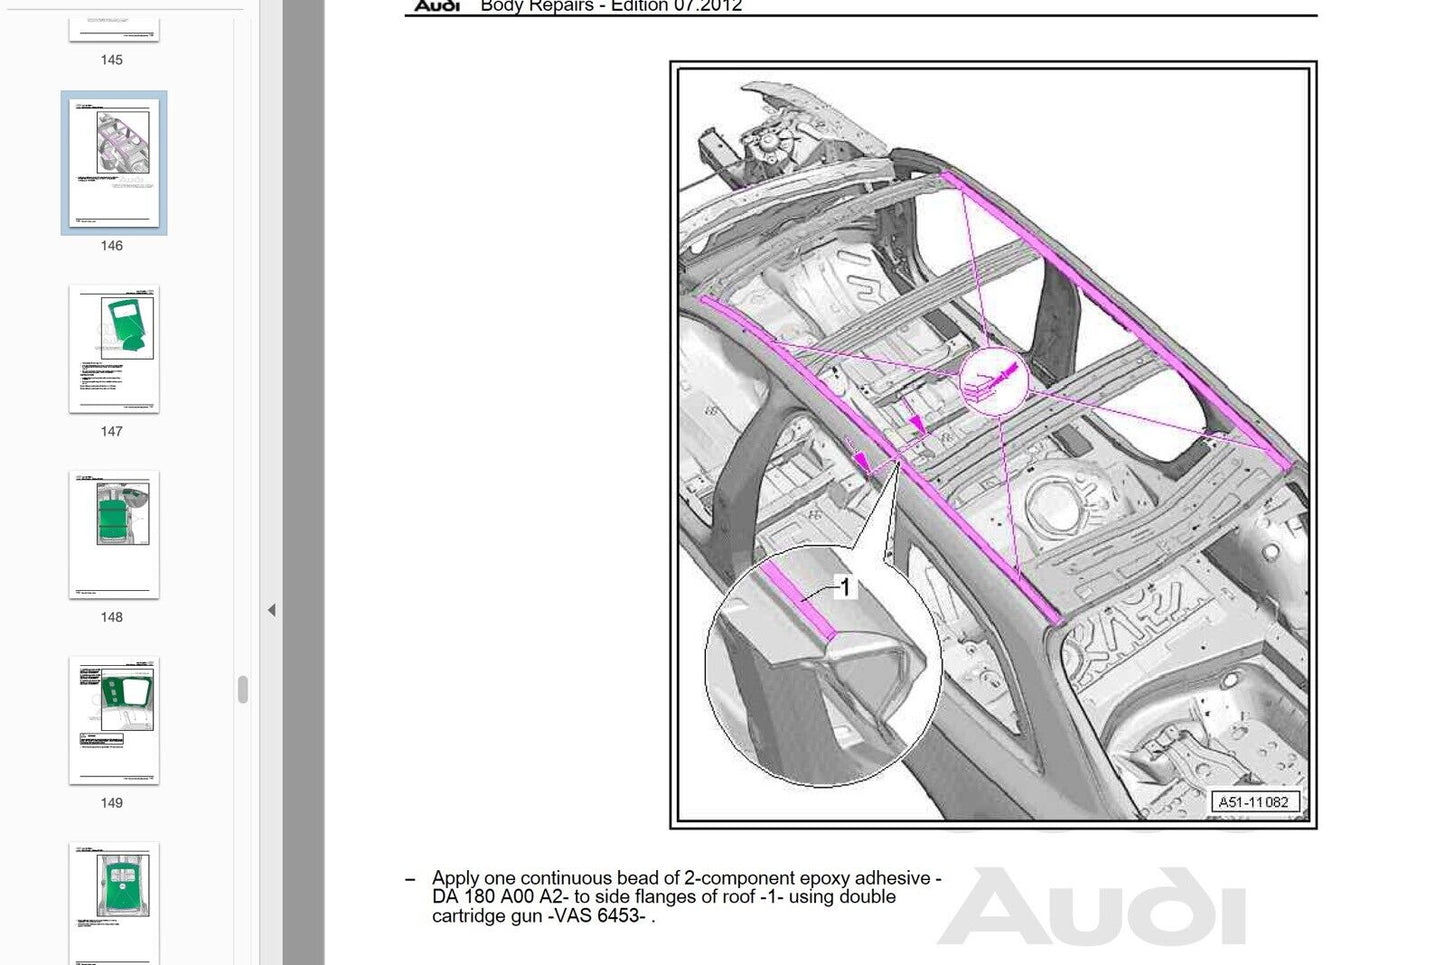 Audi A6 (C6) 2005-2011 repair manual